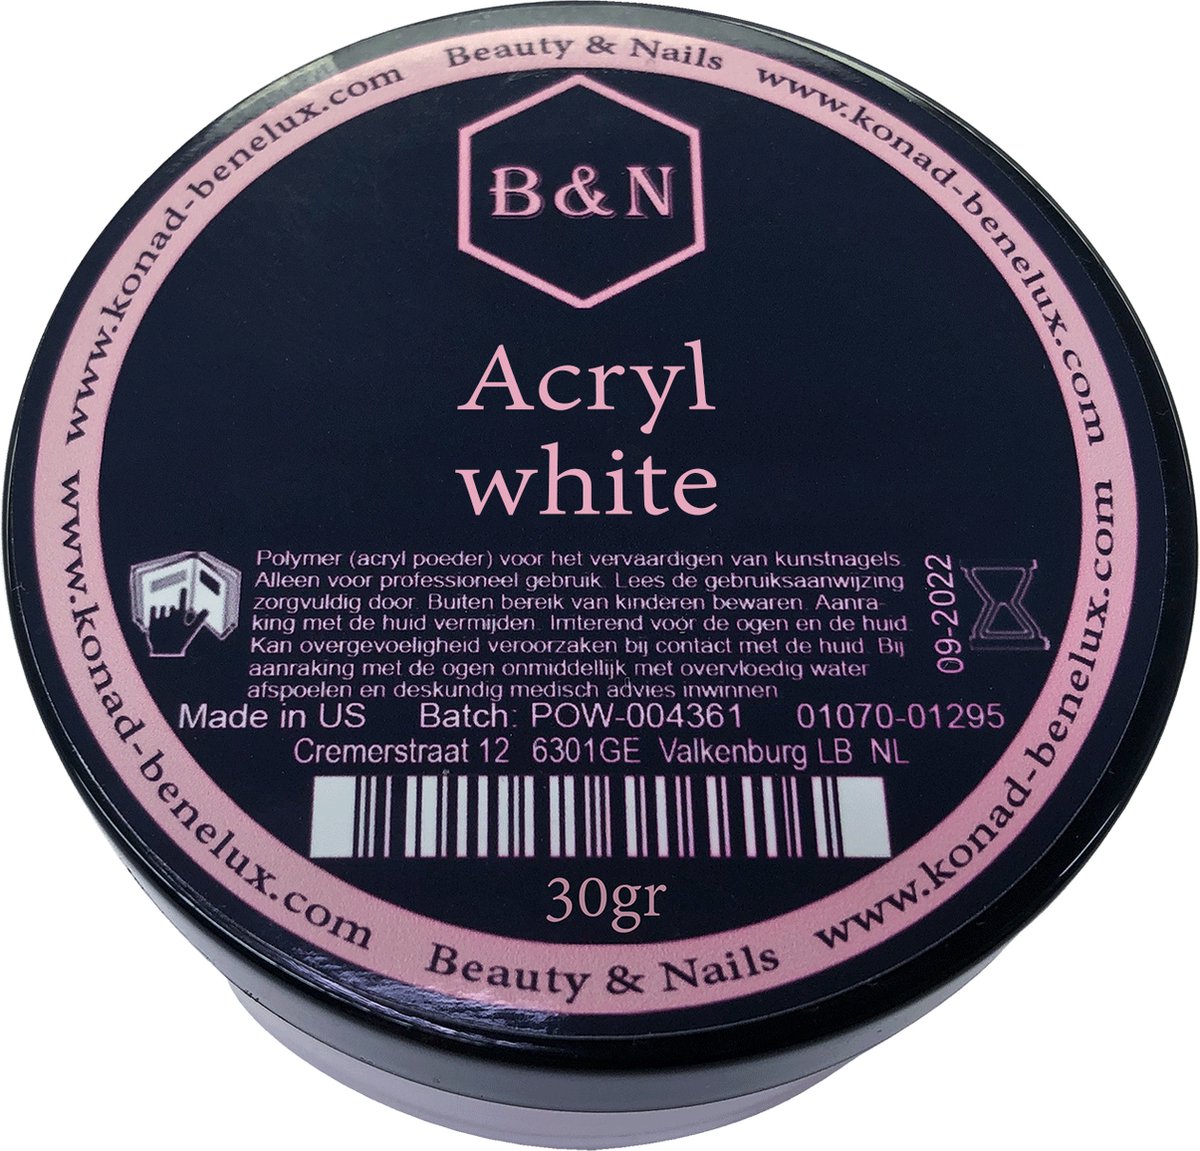 Acryl - white - 30 gr | B&N - acrylpoeder - VEGAN - acrylpoeder